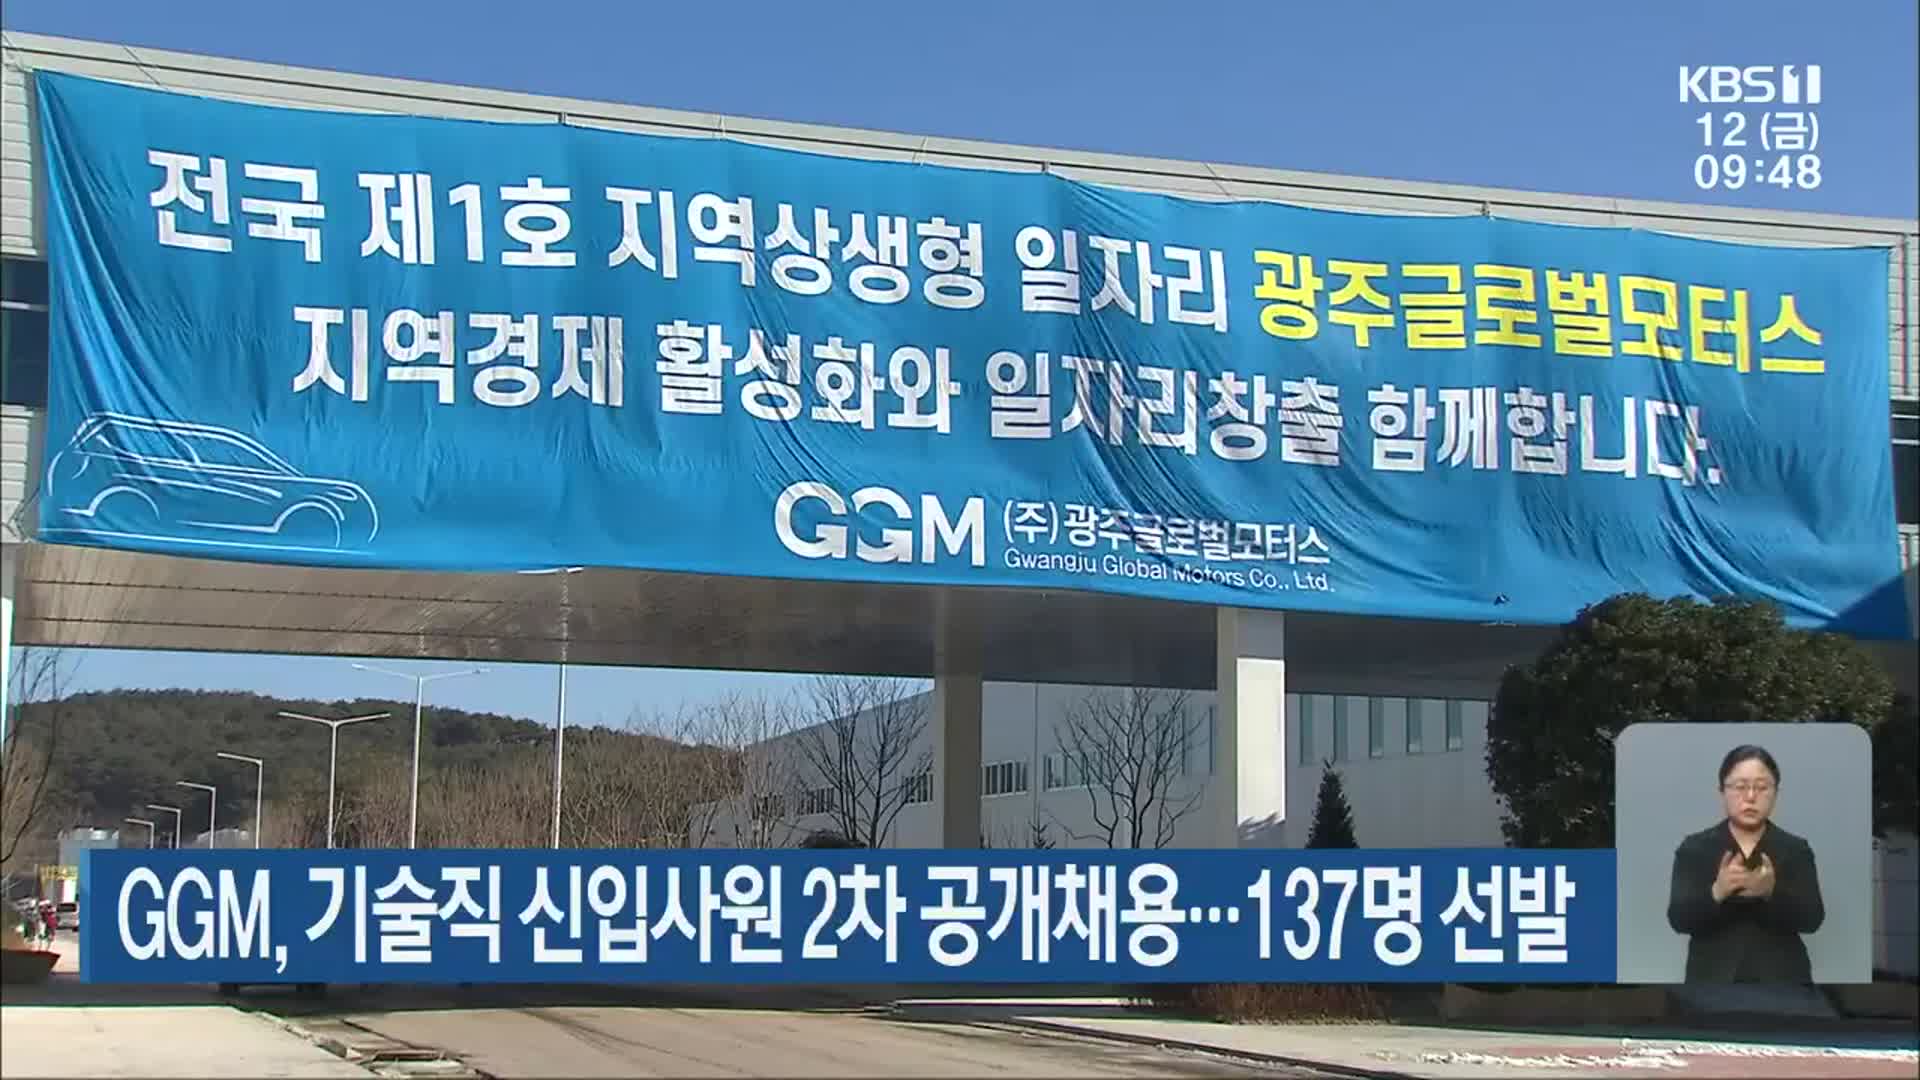 GGM, 기술직 신입사원 2차 공개채용…137명 선발